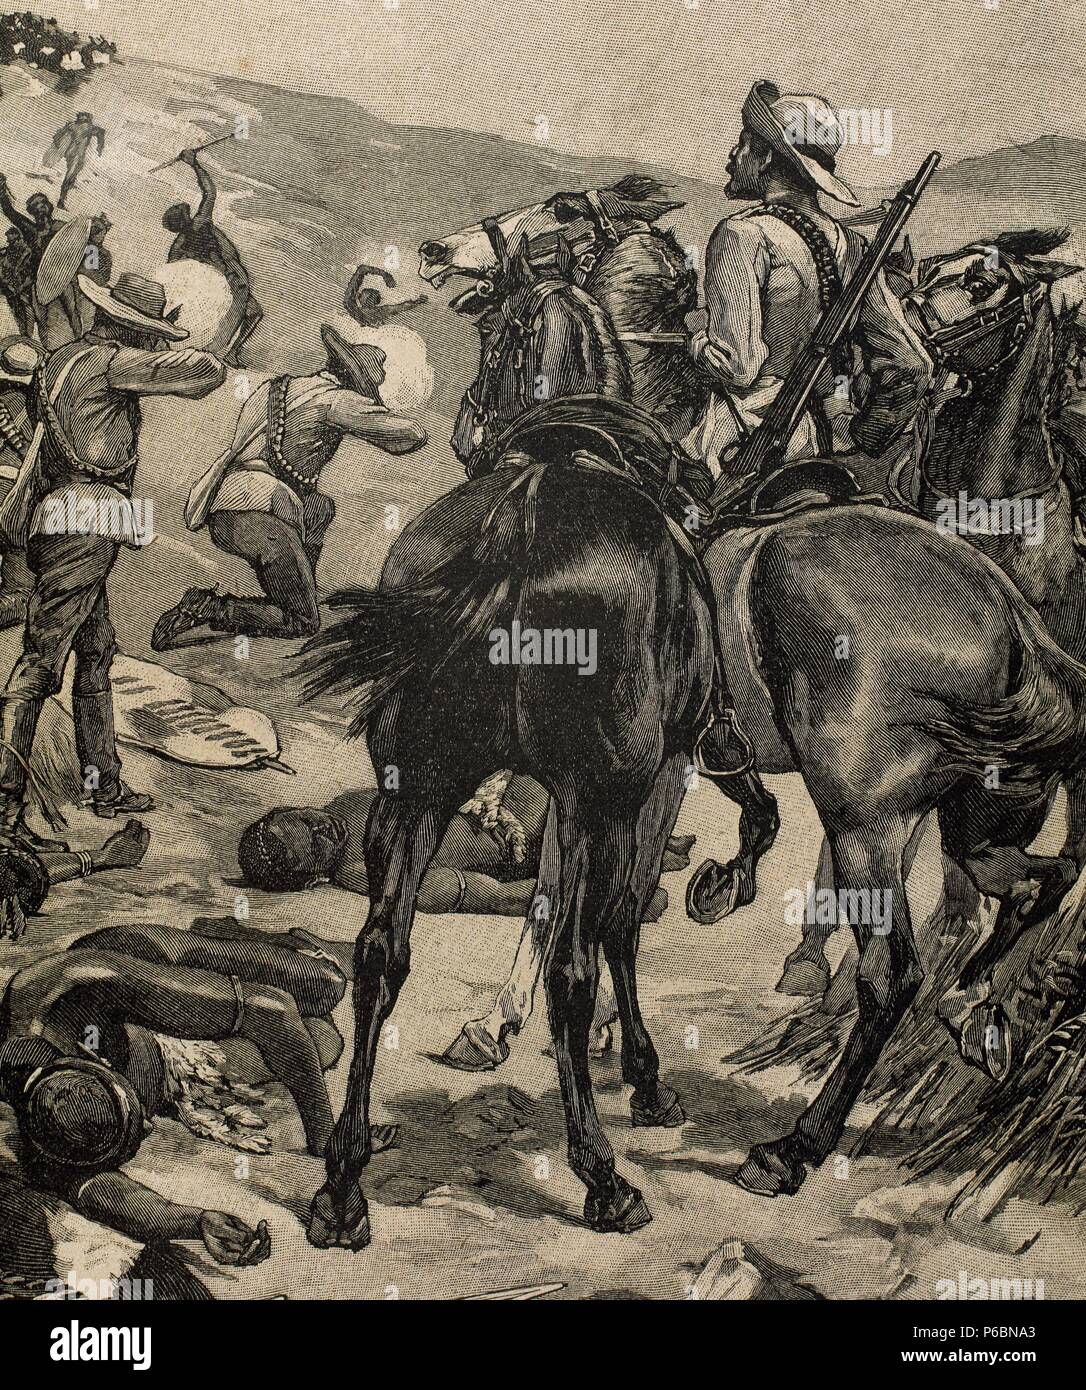 Anglo-Zulu War. Battus en 1879 entre l'Empire britannique et le royaume zoulou. Gravure de Jean-Baptiste. La Ilustracion Iberica, 1898. Banque D'Images